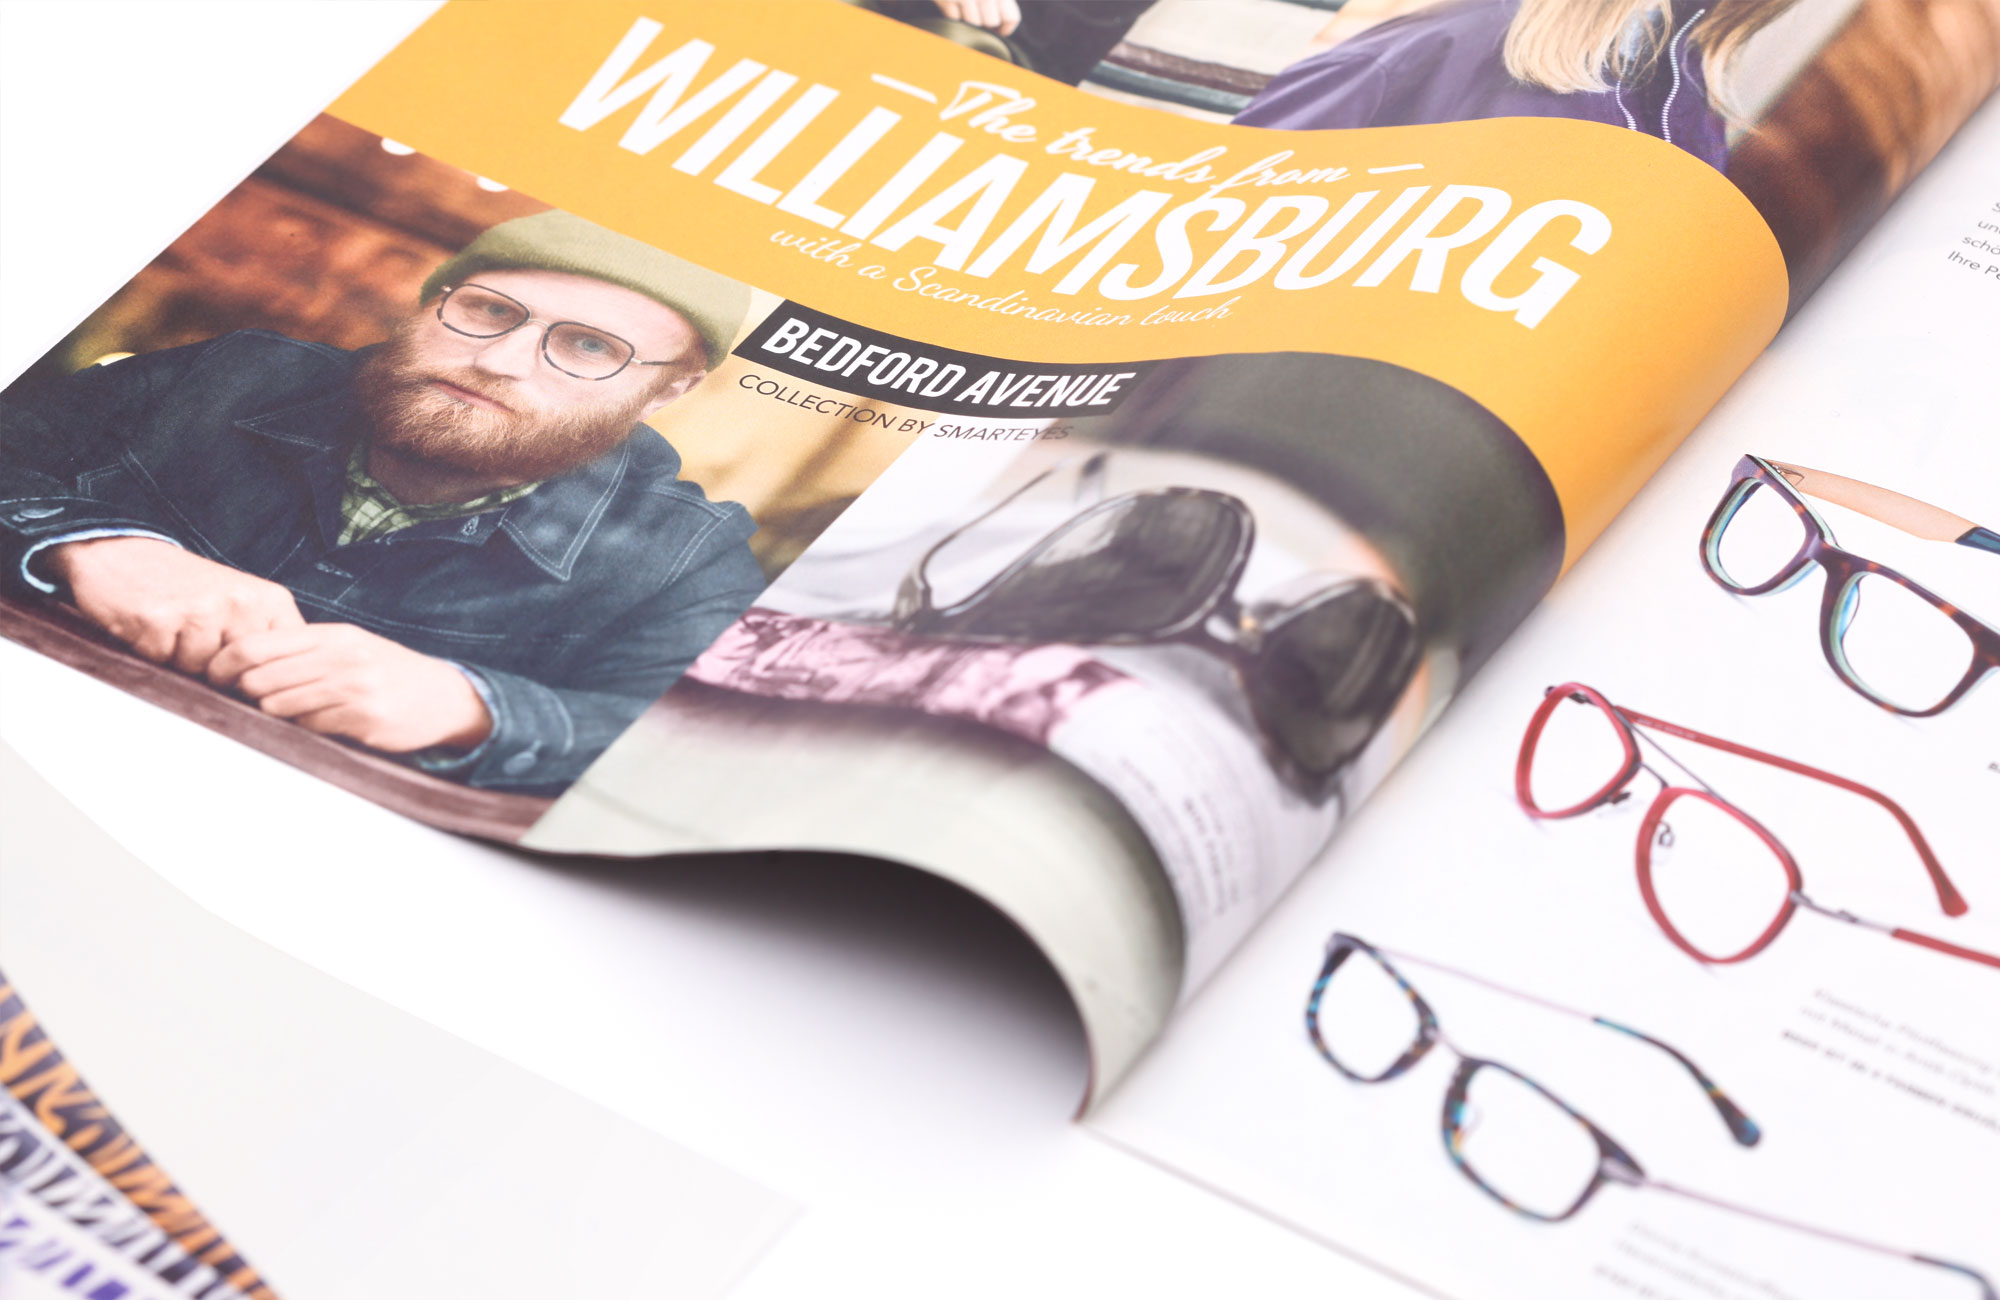 75a Büro für Gestaltung aus Stuttgart entwirft neues Kundenmagazin für den schwedischen Brillenhersteller smarteyes